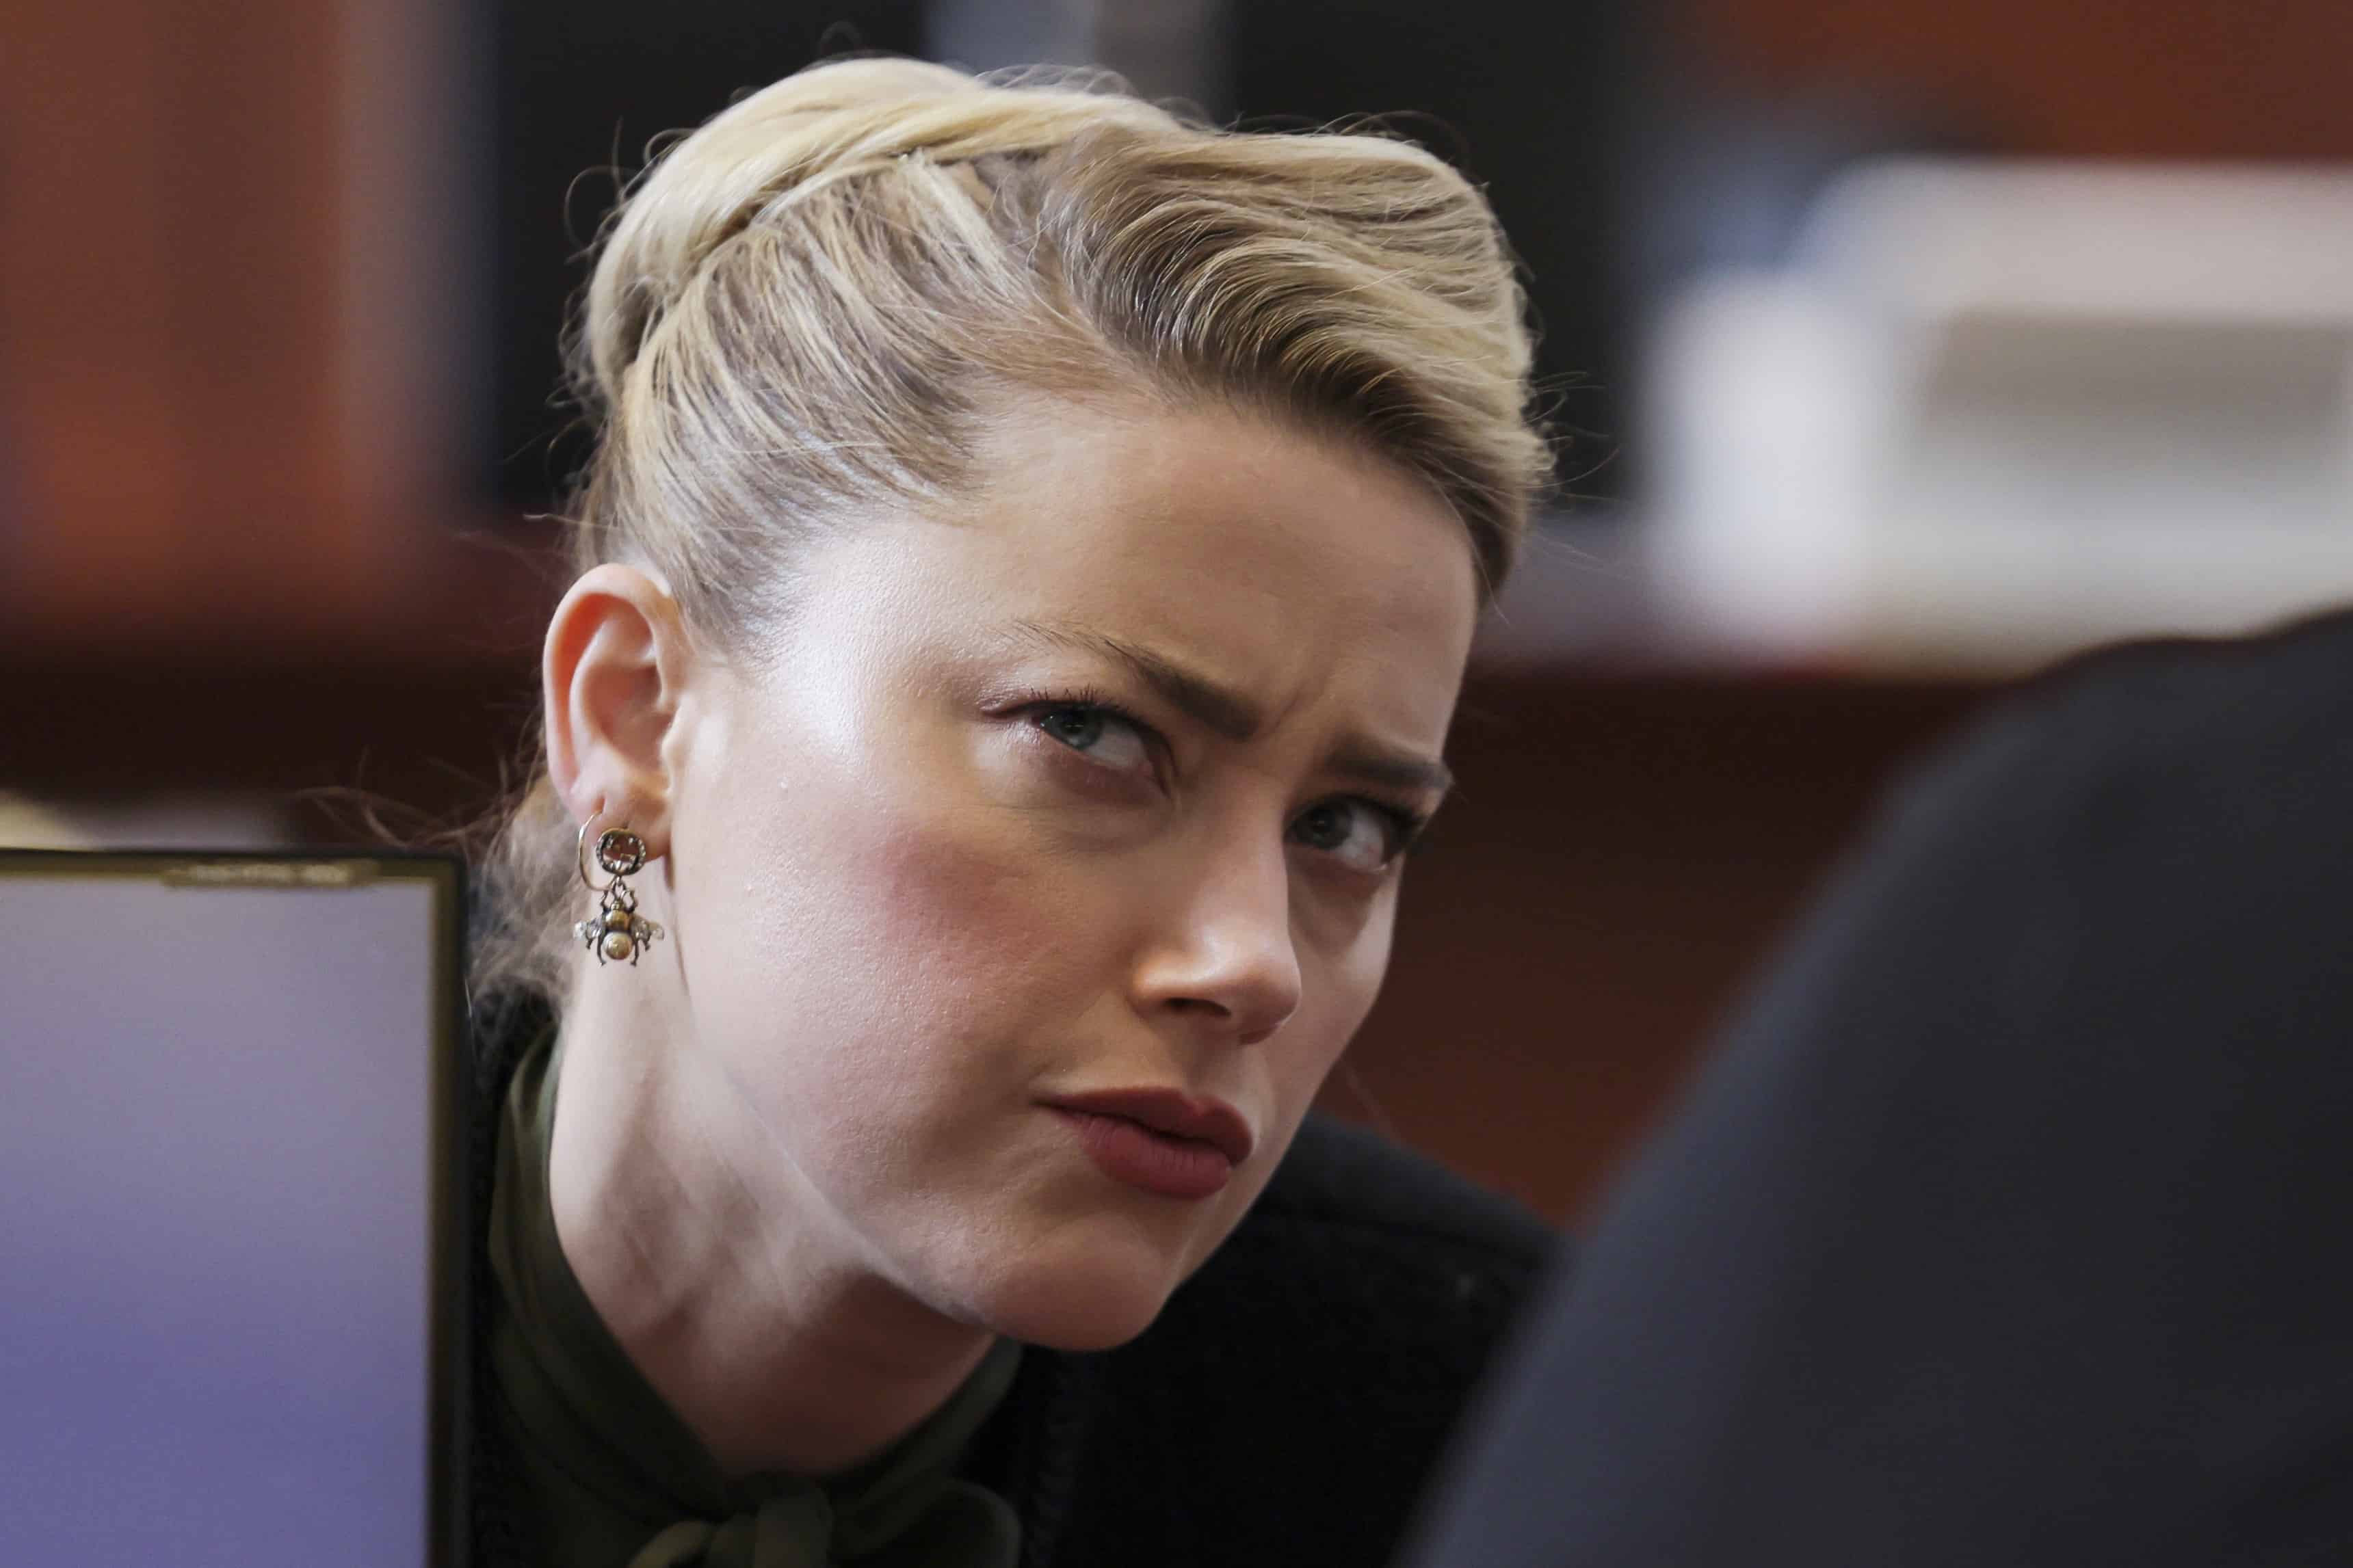 Las fotos del juicio Johnny Depp vs Amber Heard